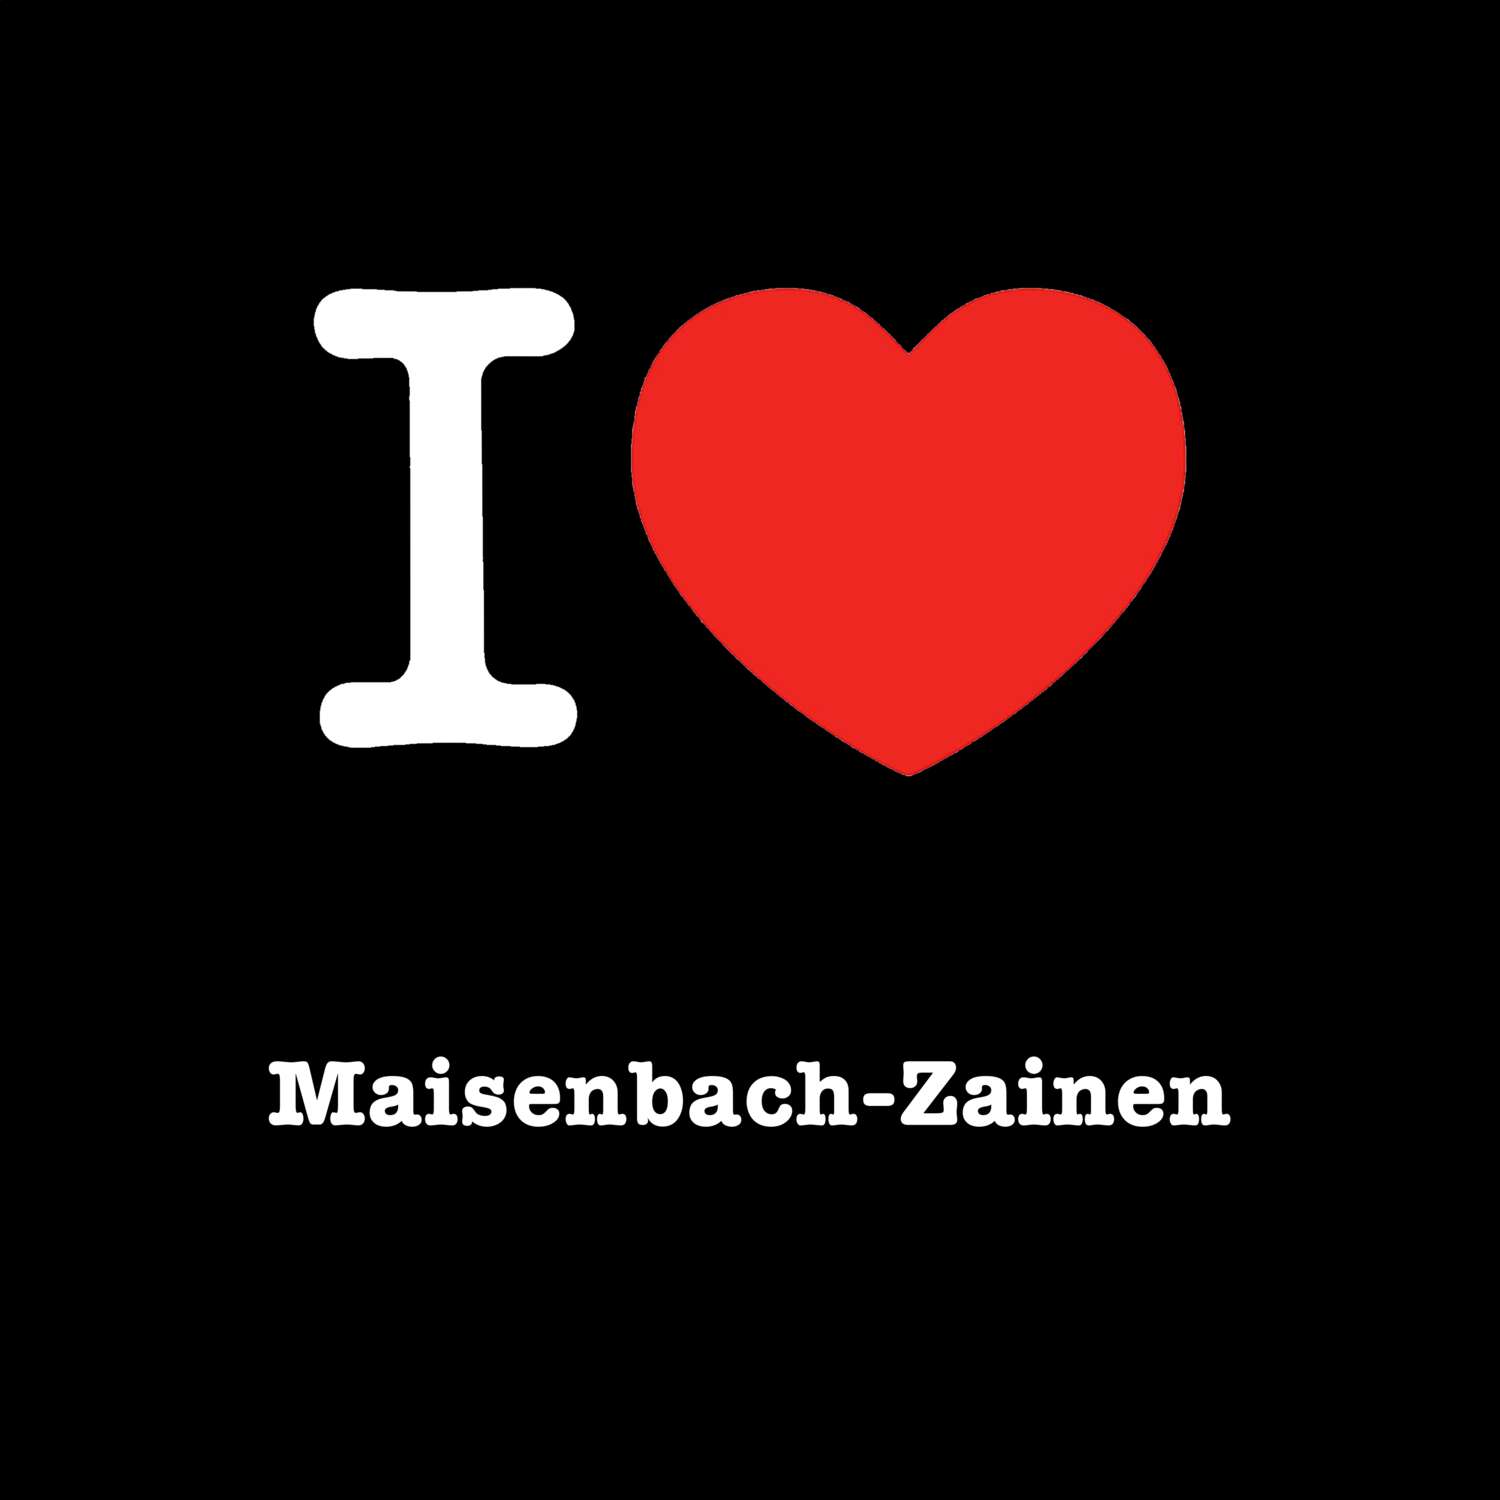 Maisenbach-Zainen T-Shirt »I love«